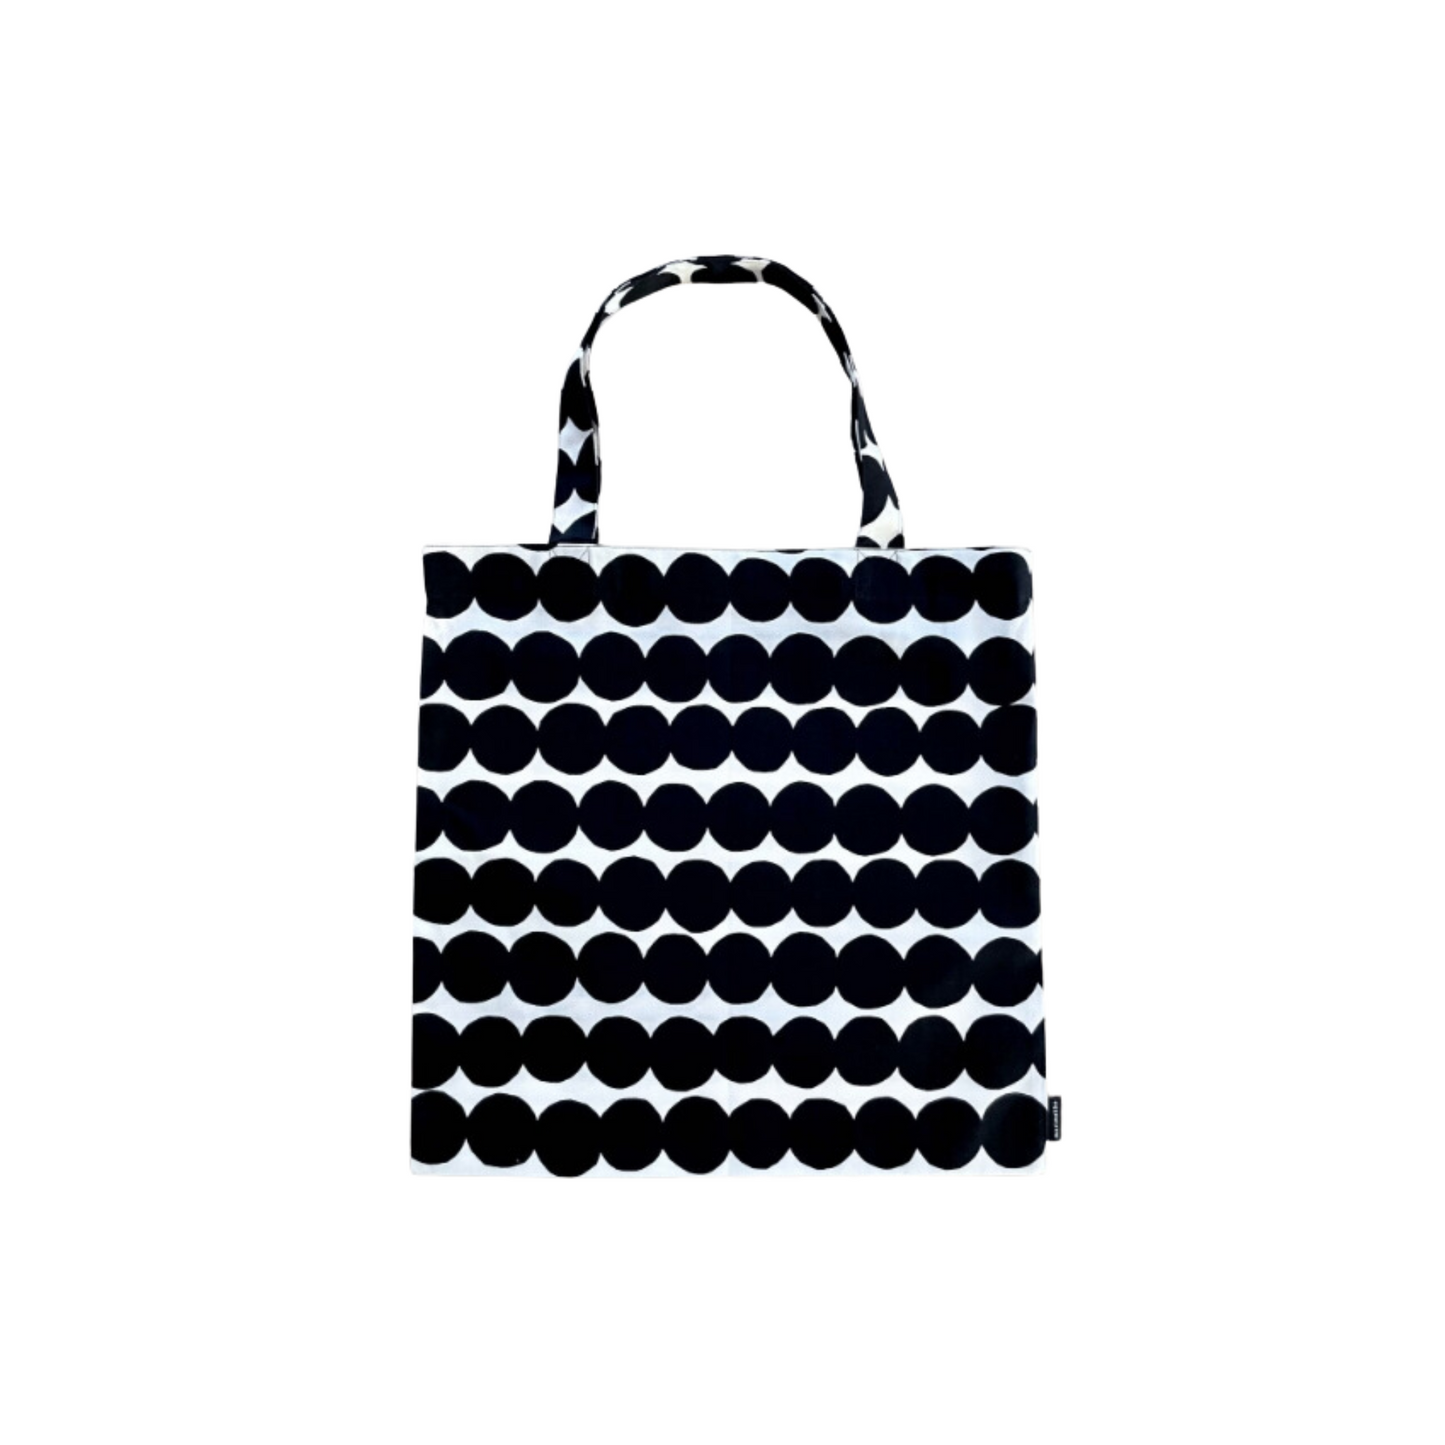 Marimekko - Printed Tote Bags